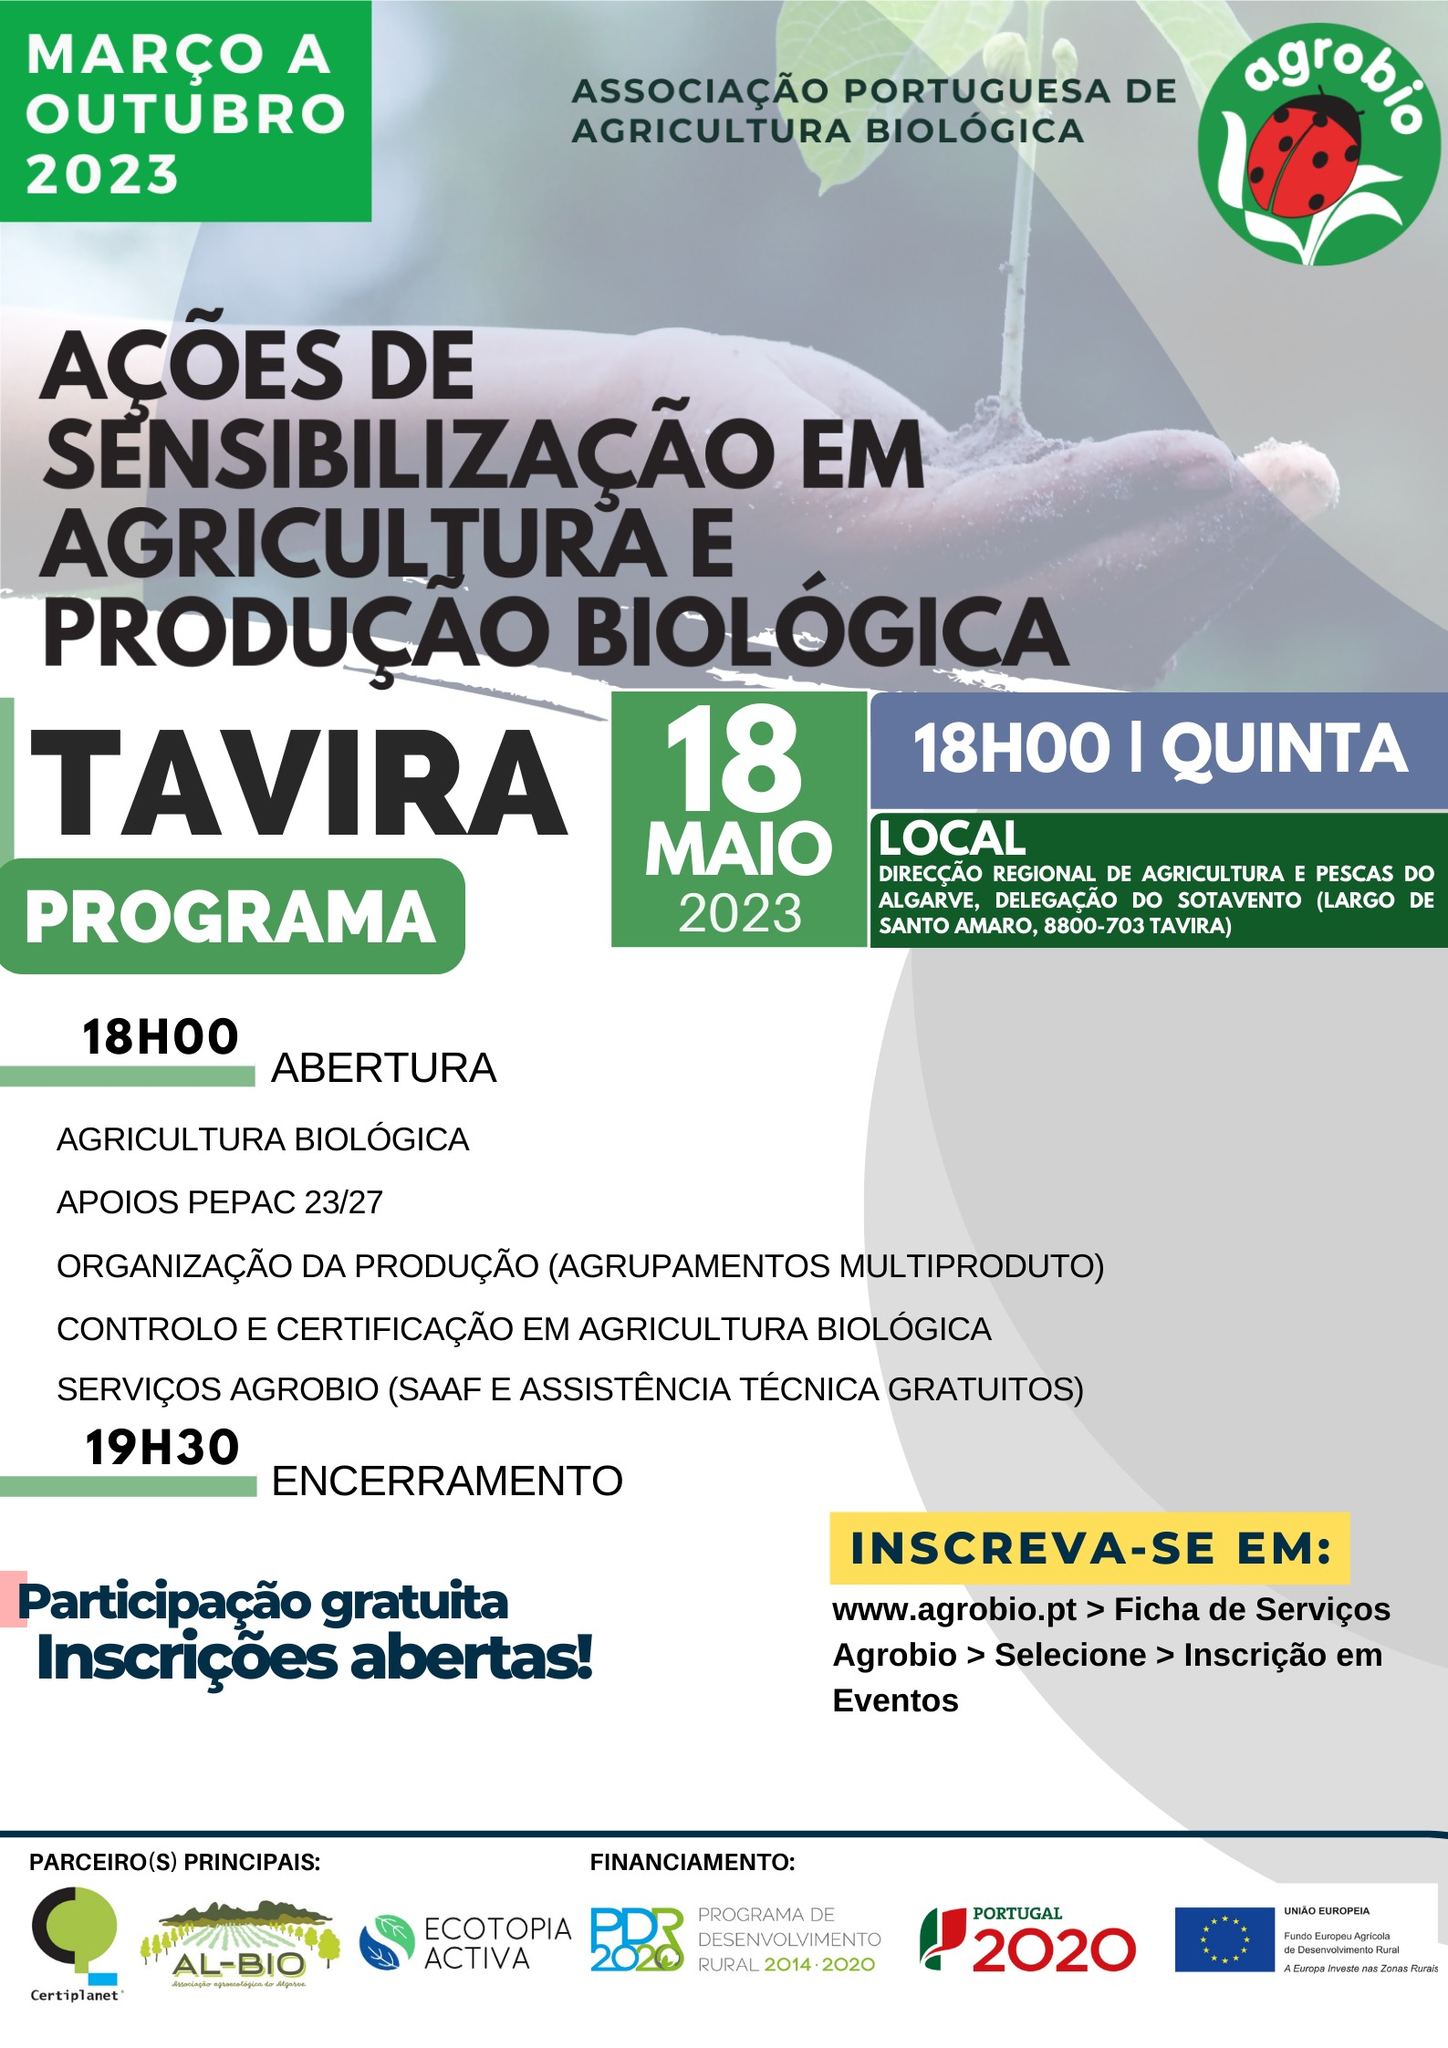 POSTO AGRÁRIO DE TAVIRA | Ação de Sensibilização em Agricultura e Produção Biológica